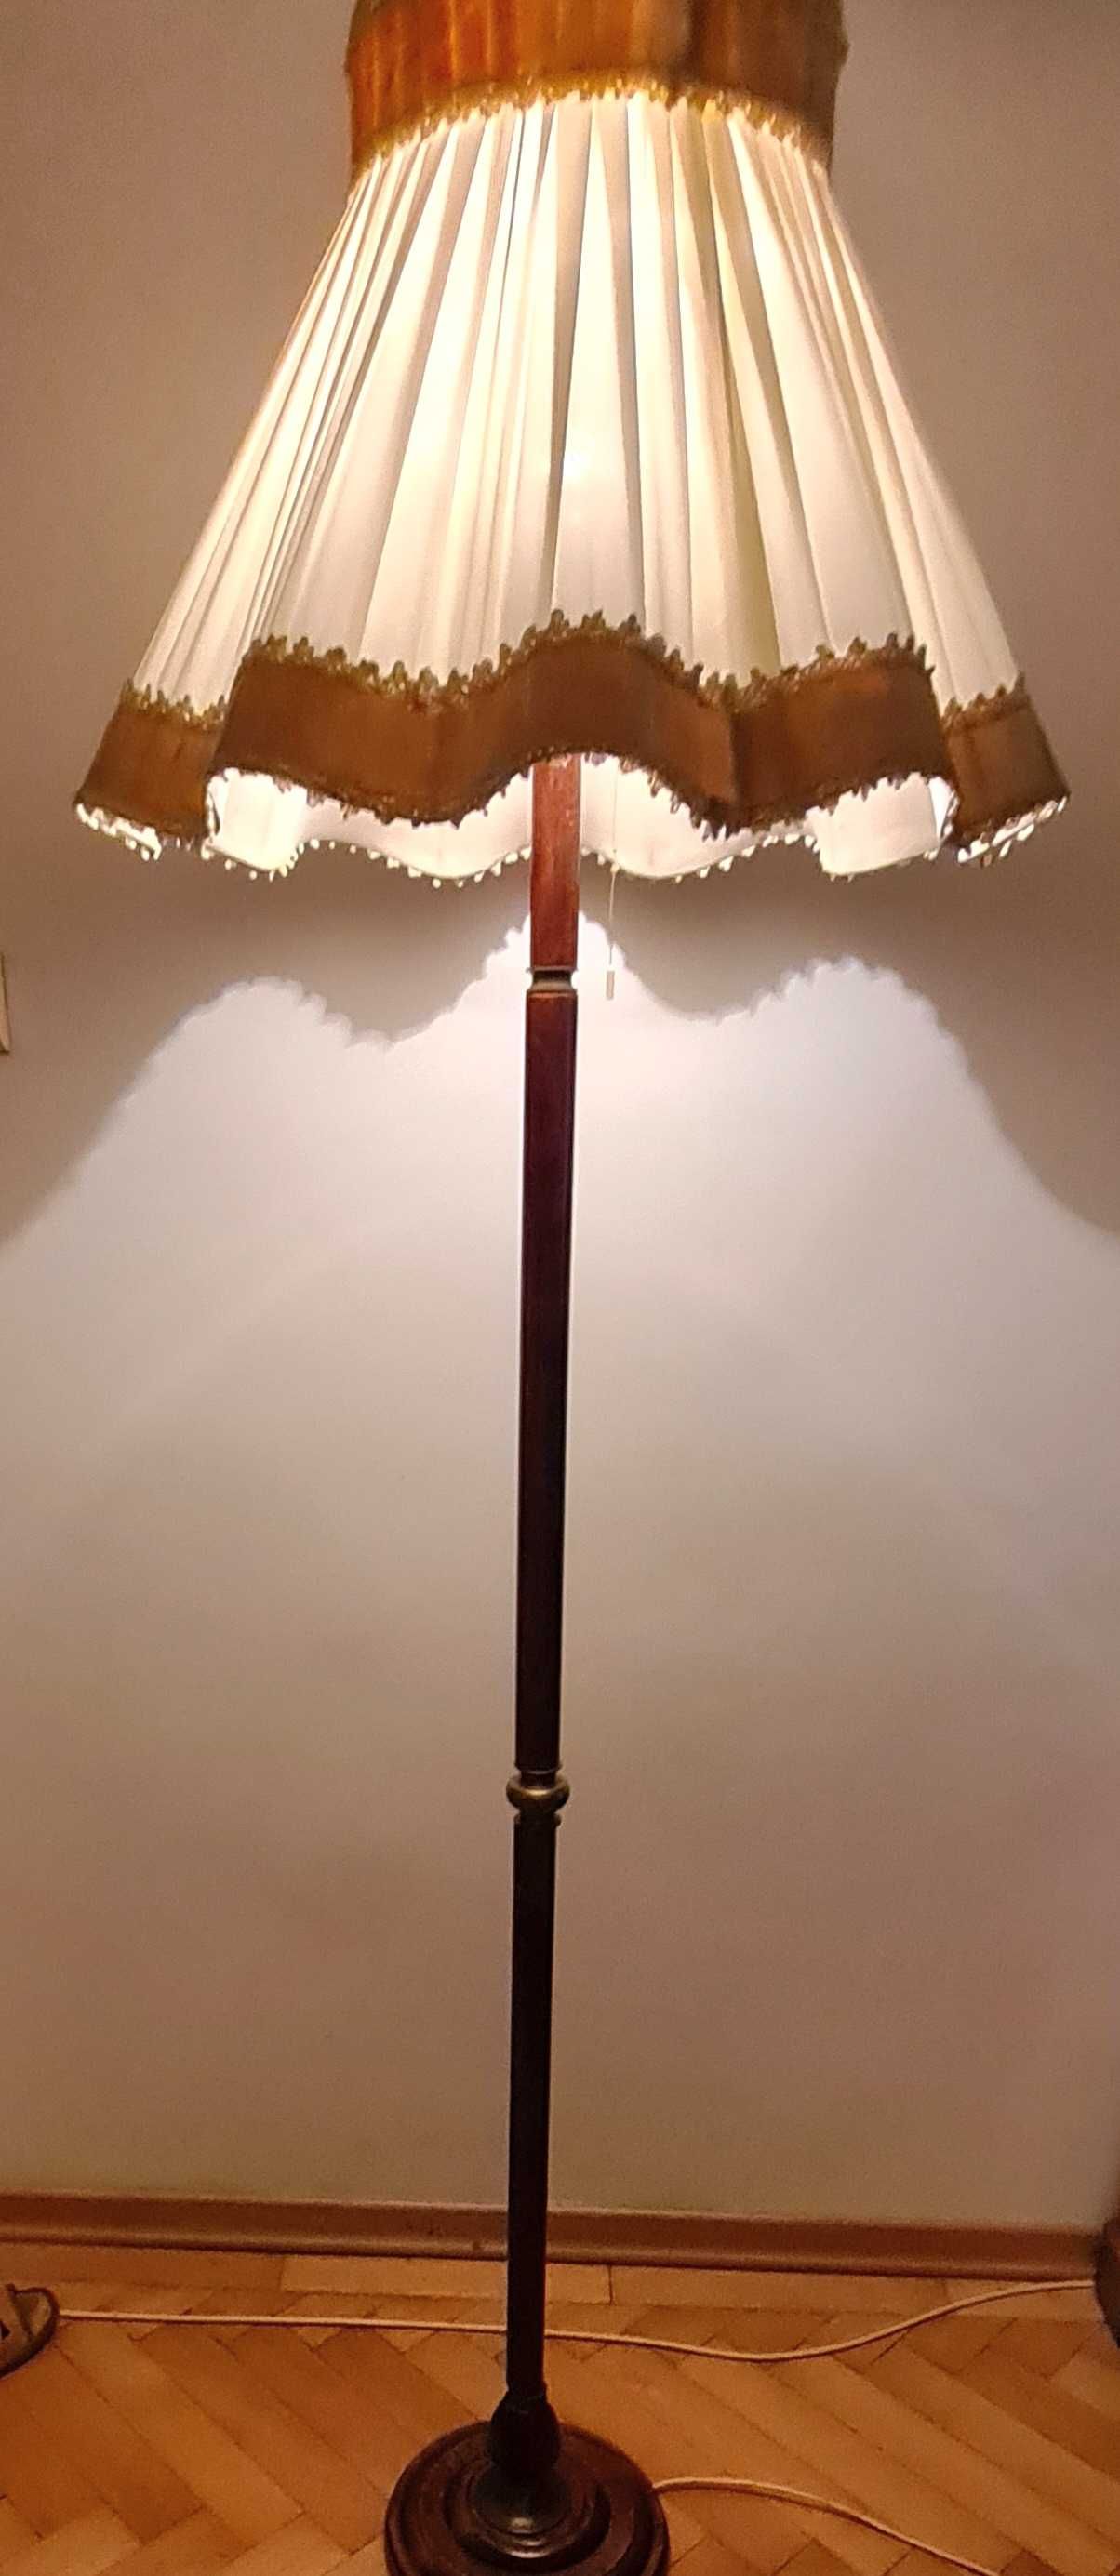 Lampa podłogowa klasyczna